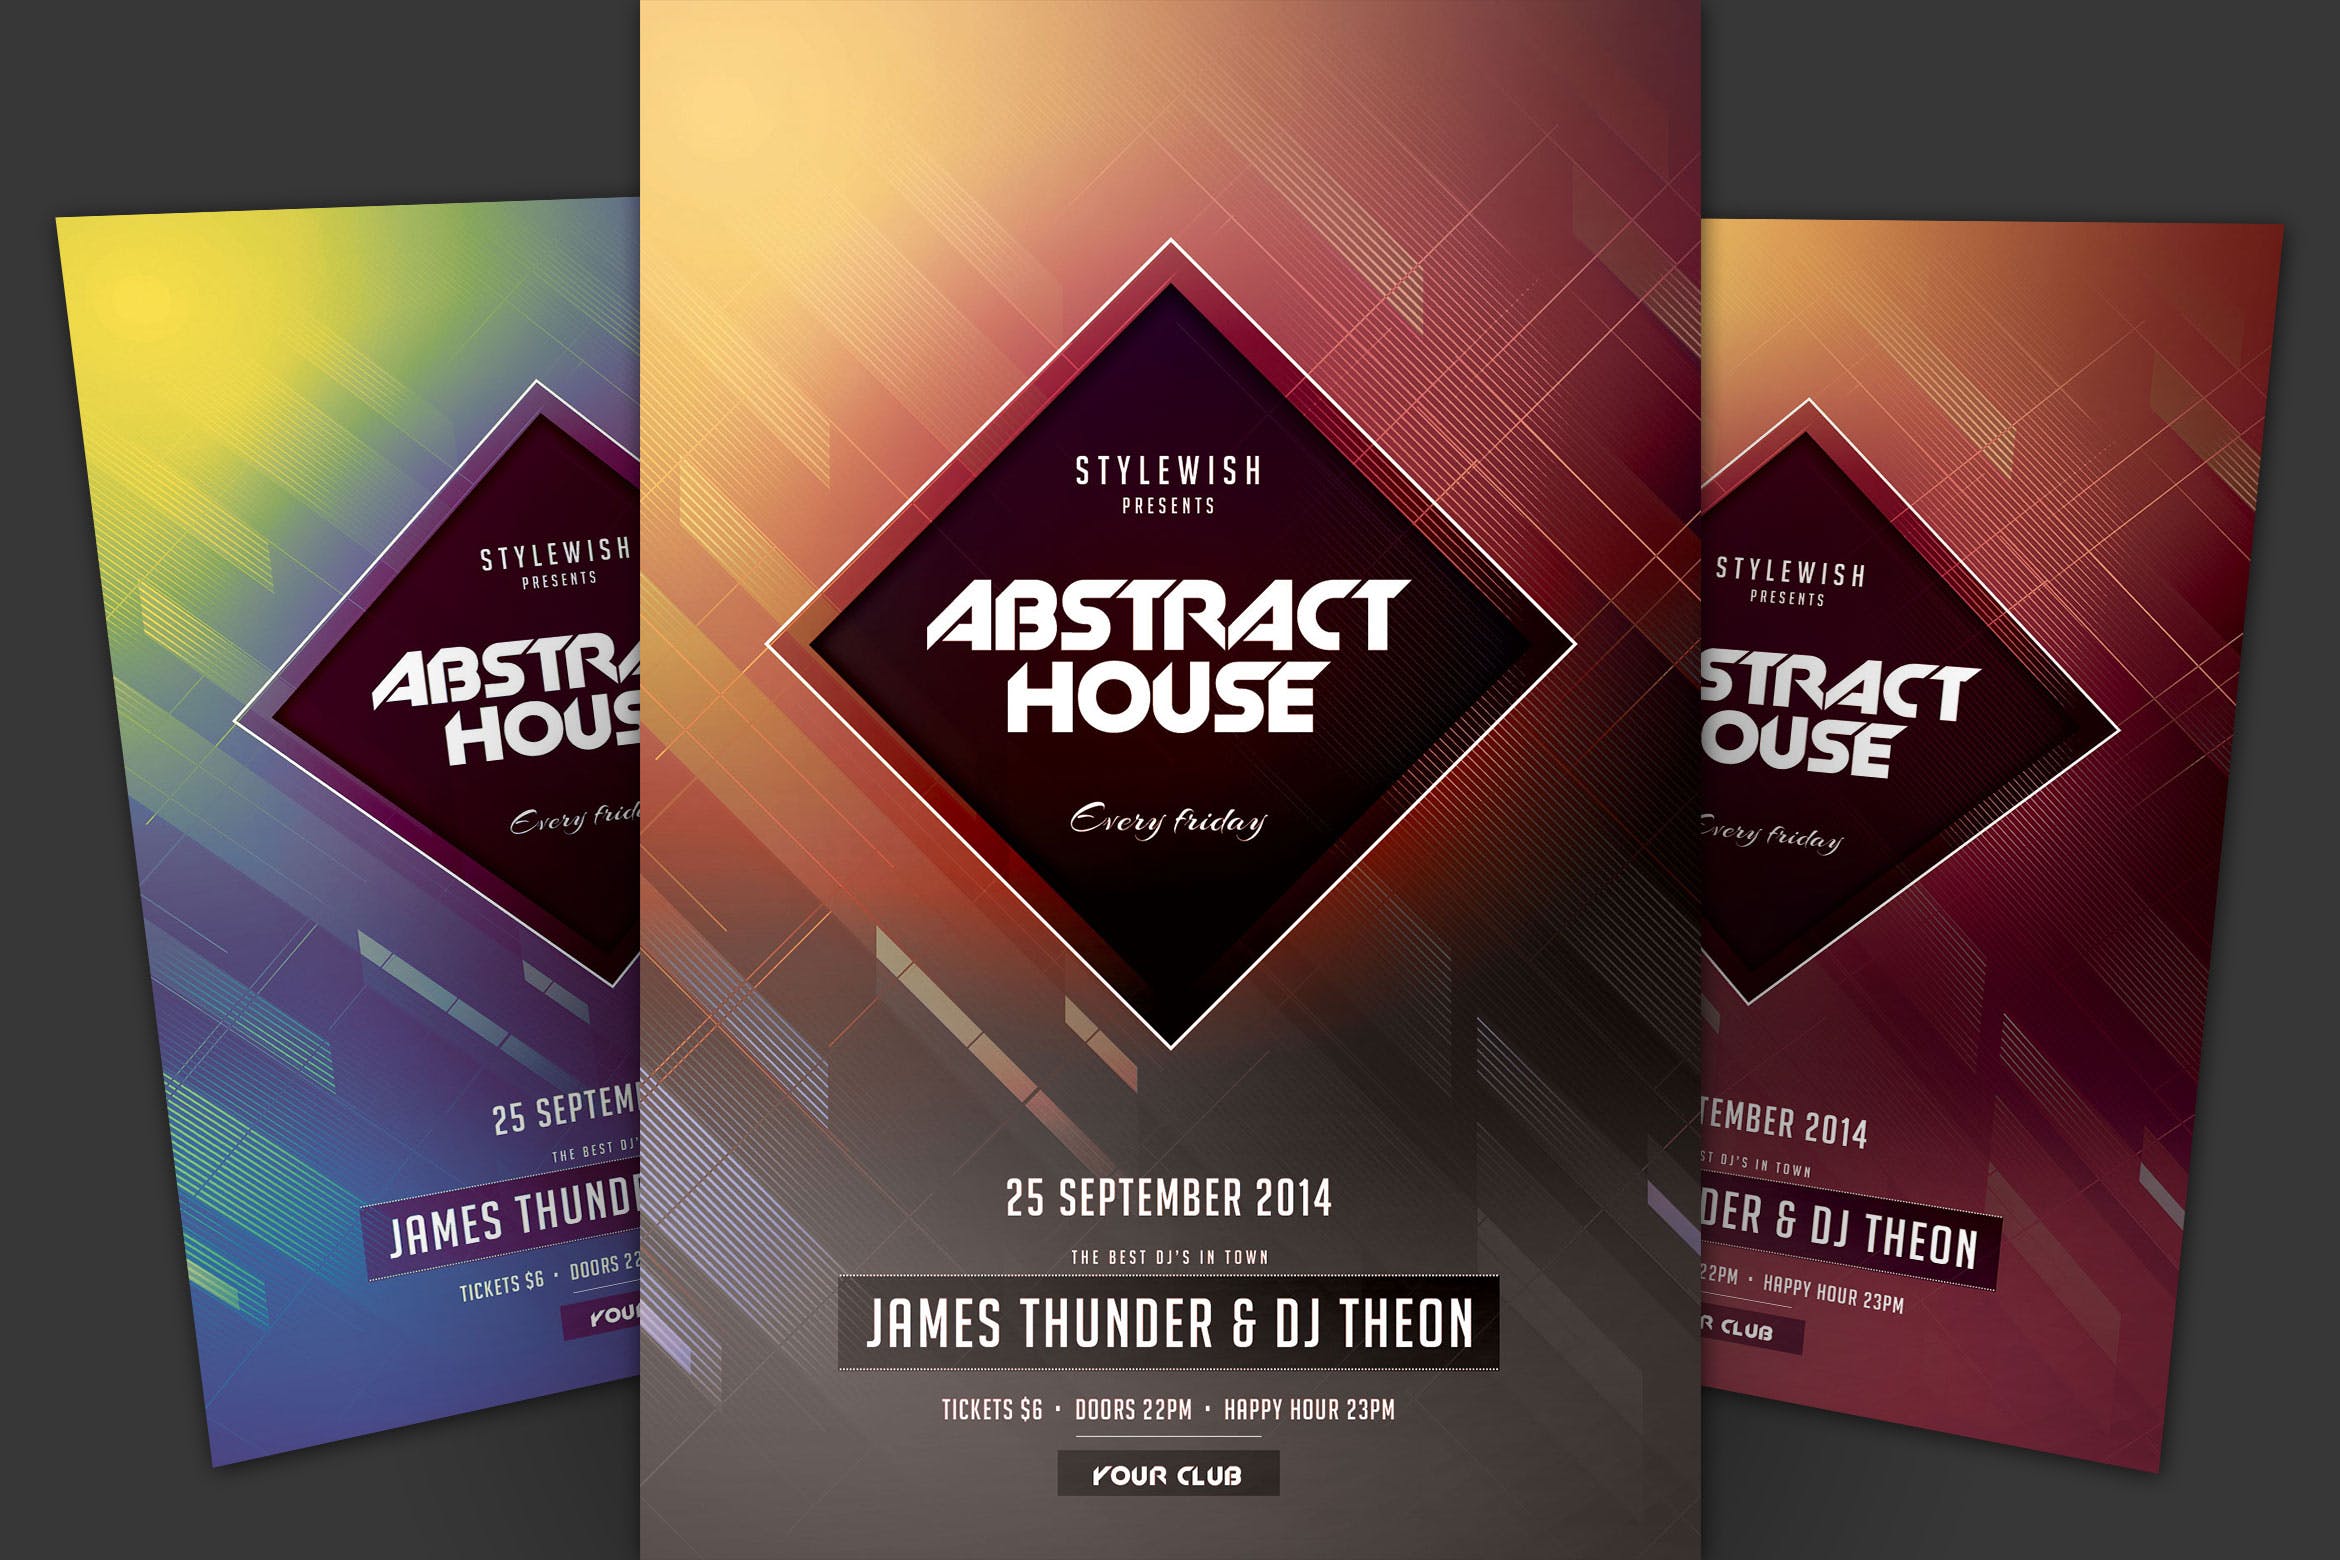 抽象设计风格现代音乐活动海报传单16图库精选PSD模板 Abstract House Flyer插图